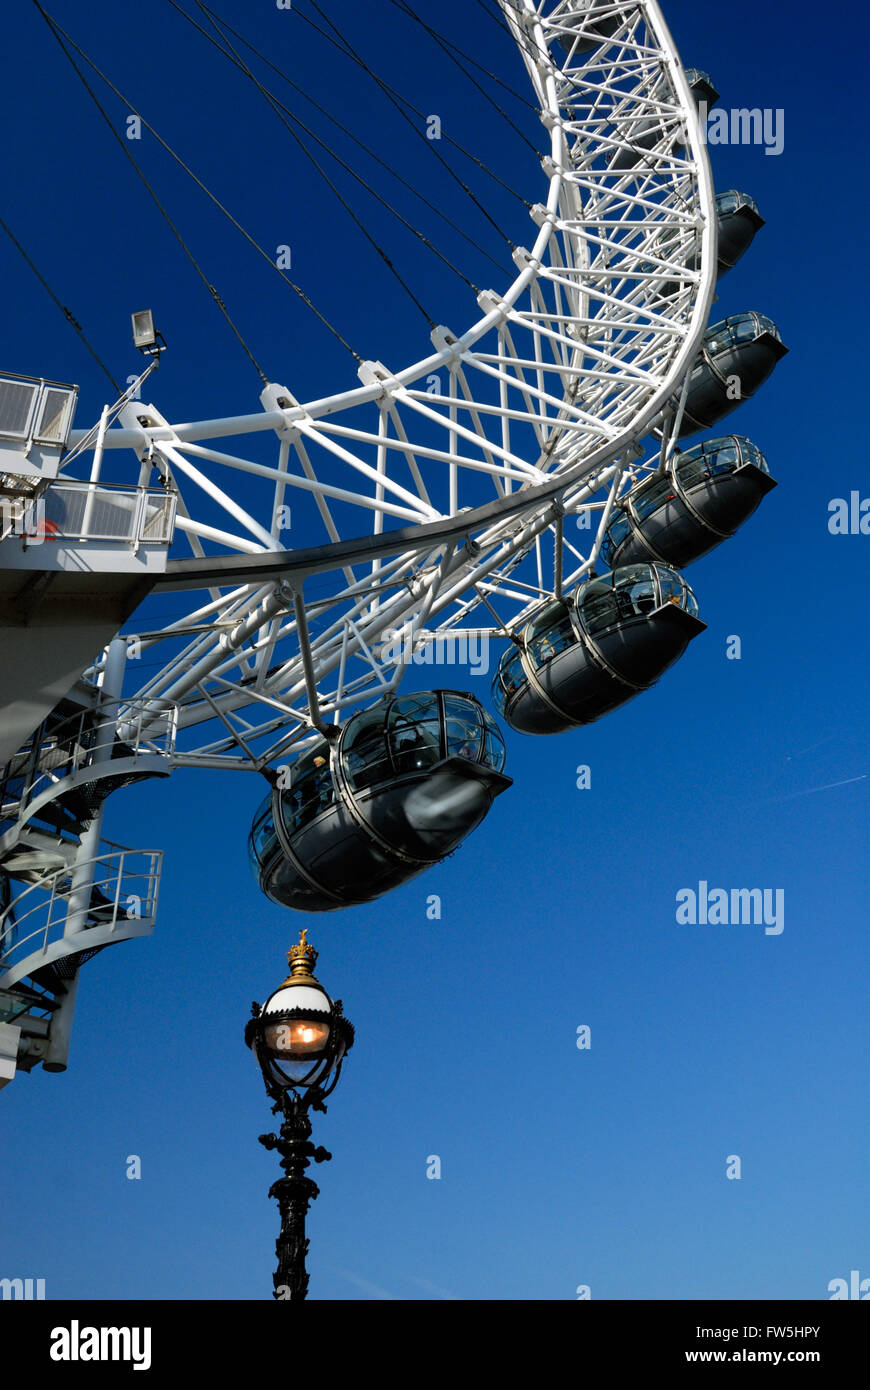 London Eye, la roue du millénaire, avec un lampadaire, près de Royal Festival Hall, RFH, concert hall, le long de la Thames embankment, Rive Sud, Southbank Banque D'Images